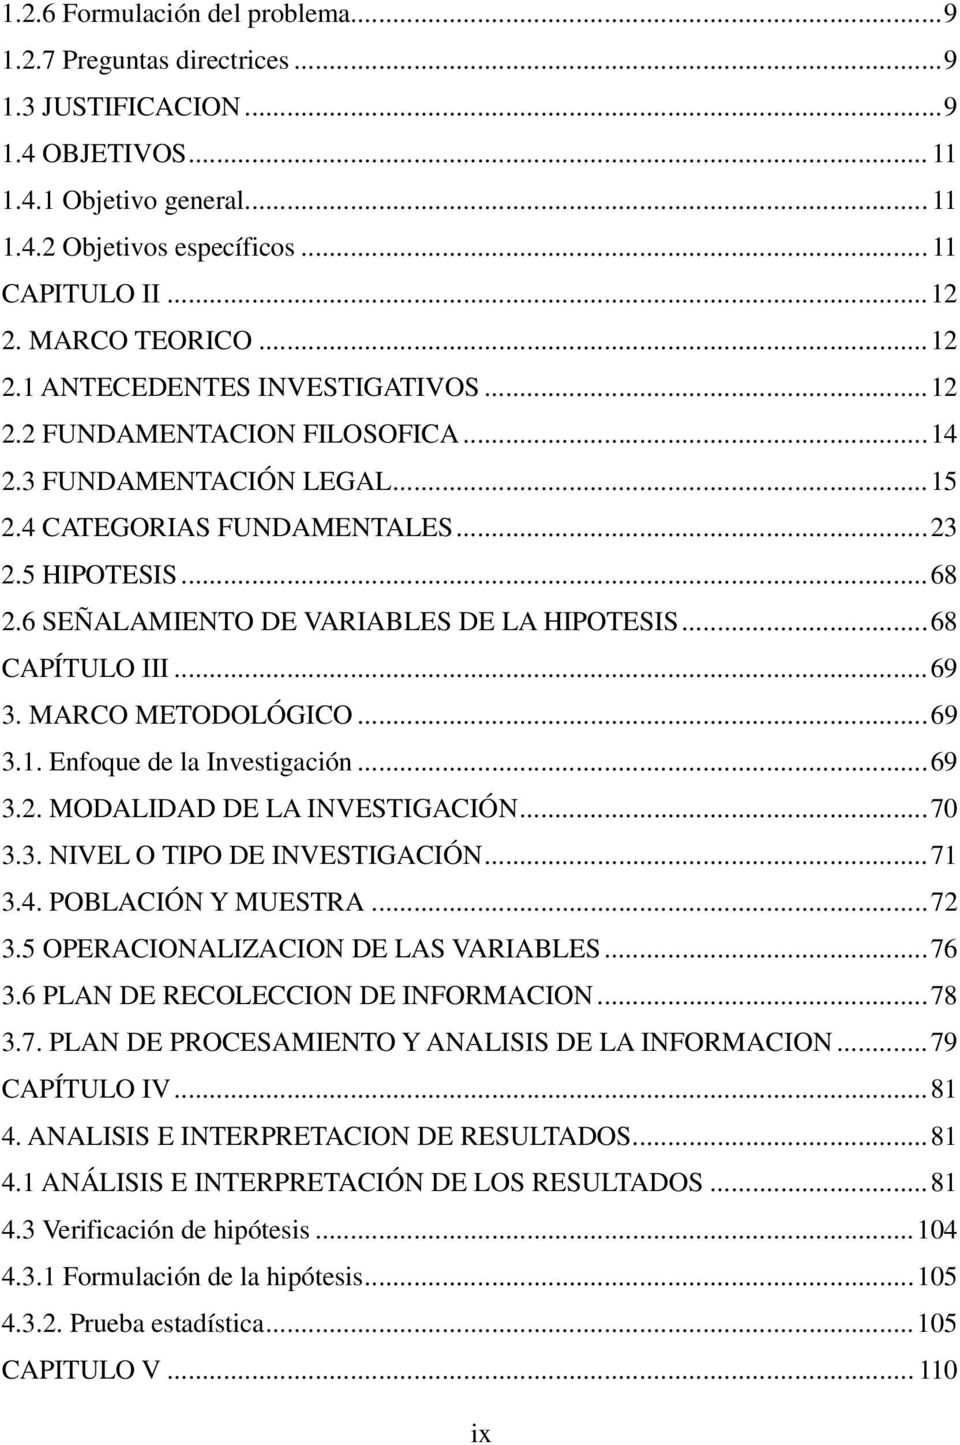 6 SEÑALAMIENTO DE VARIABLES DE LA HIPOTESIS... 68 CAPÍTULO III... 69 3. MARCO METODOLÓGICO... 69 3.1. Enfoque de la Investigación... 69 3.2. MODALIDAD DE LA INVESTIGACIÓN... 70 3.3. NIVEL O TIPO DE INVESTIGACIÓN.